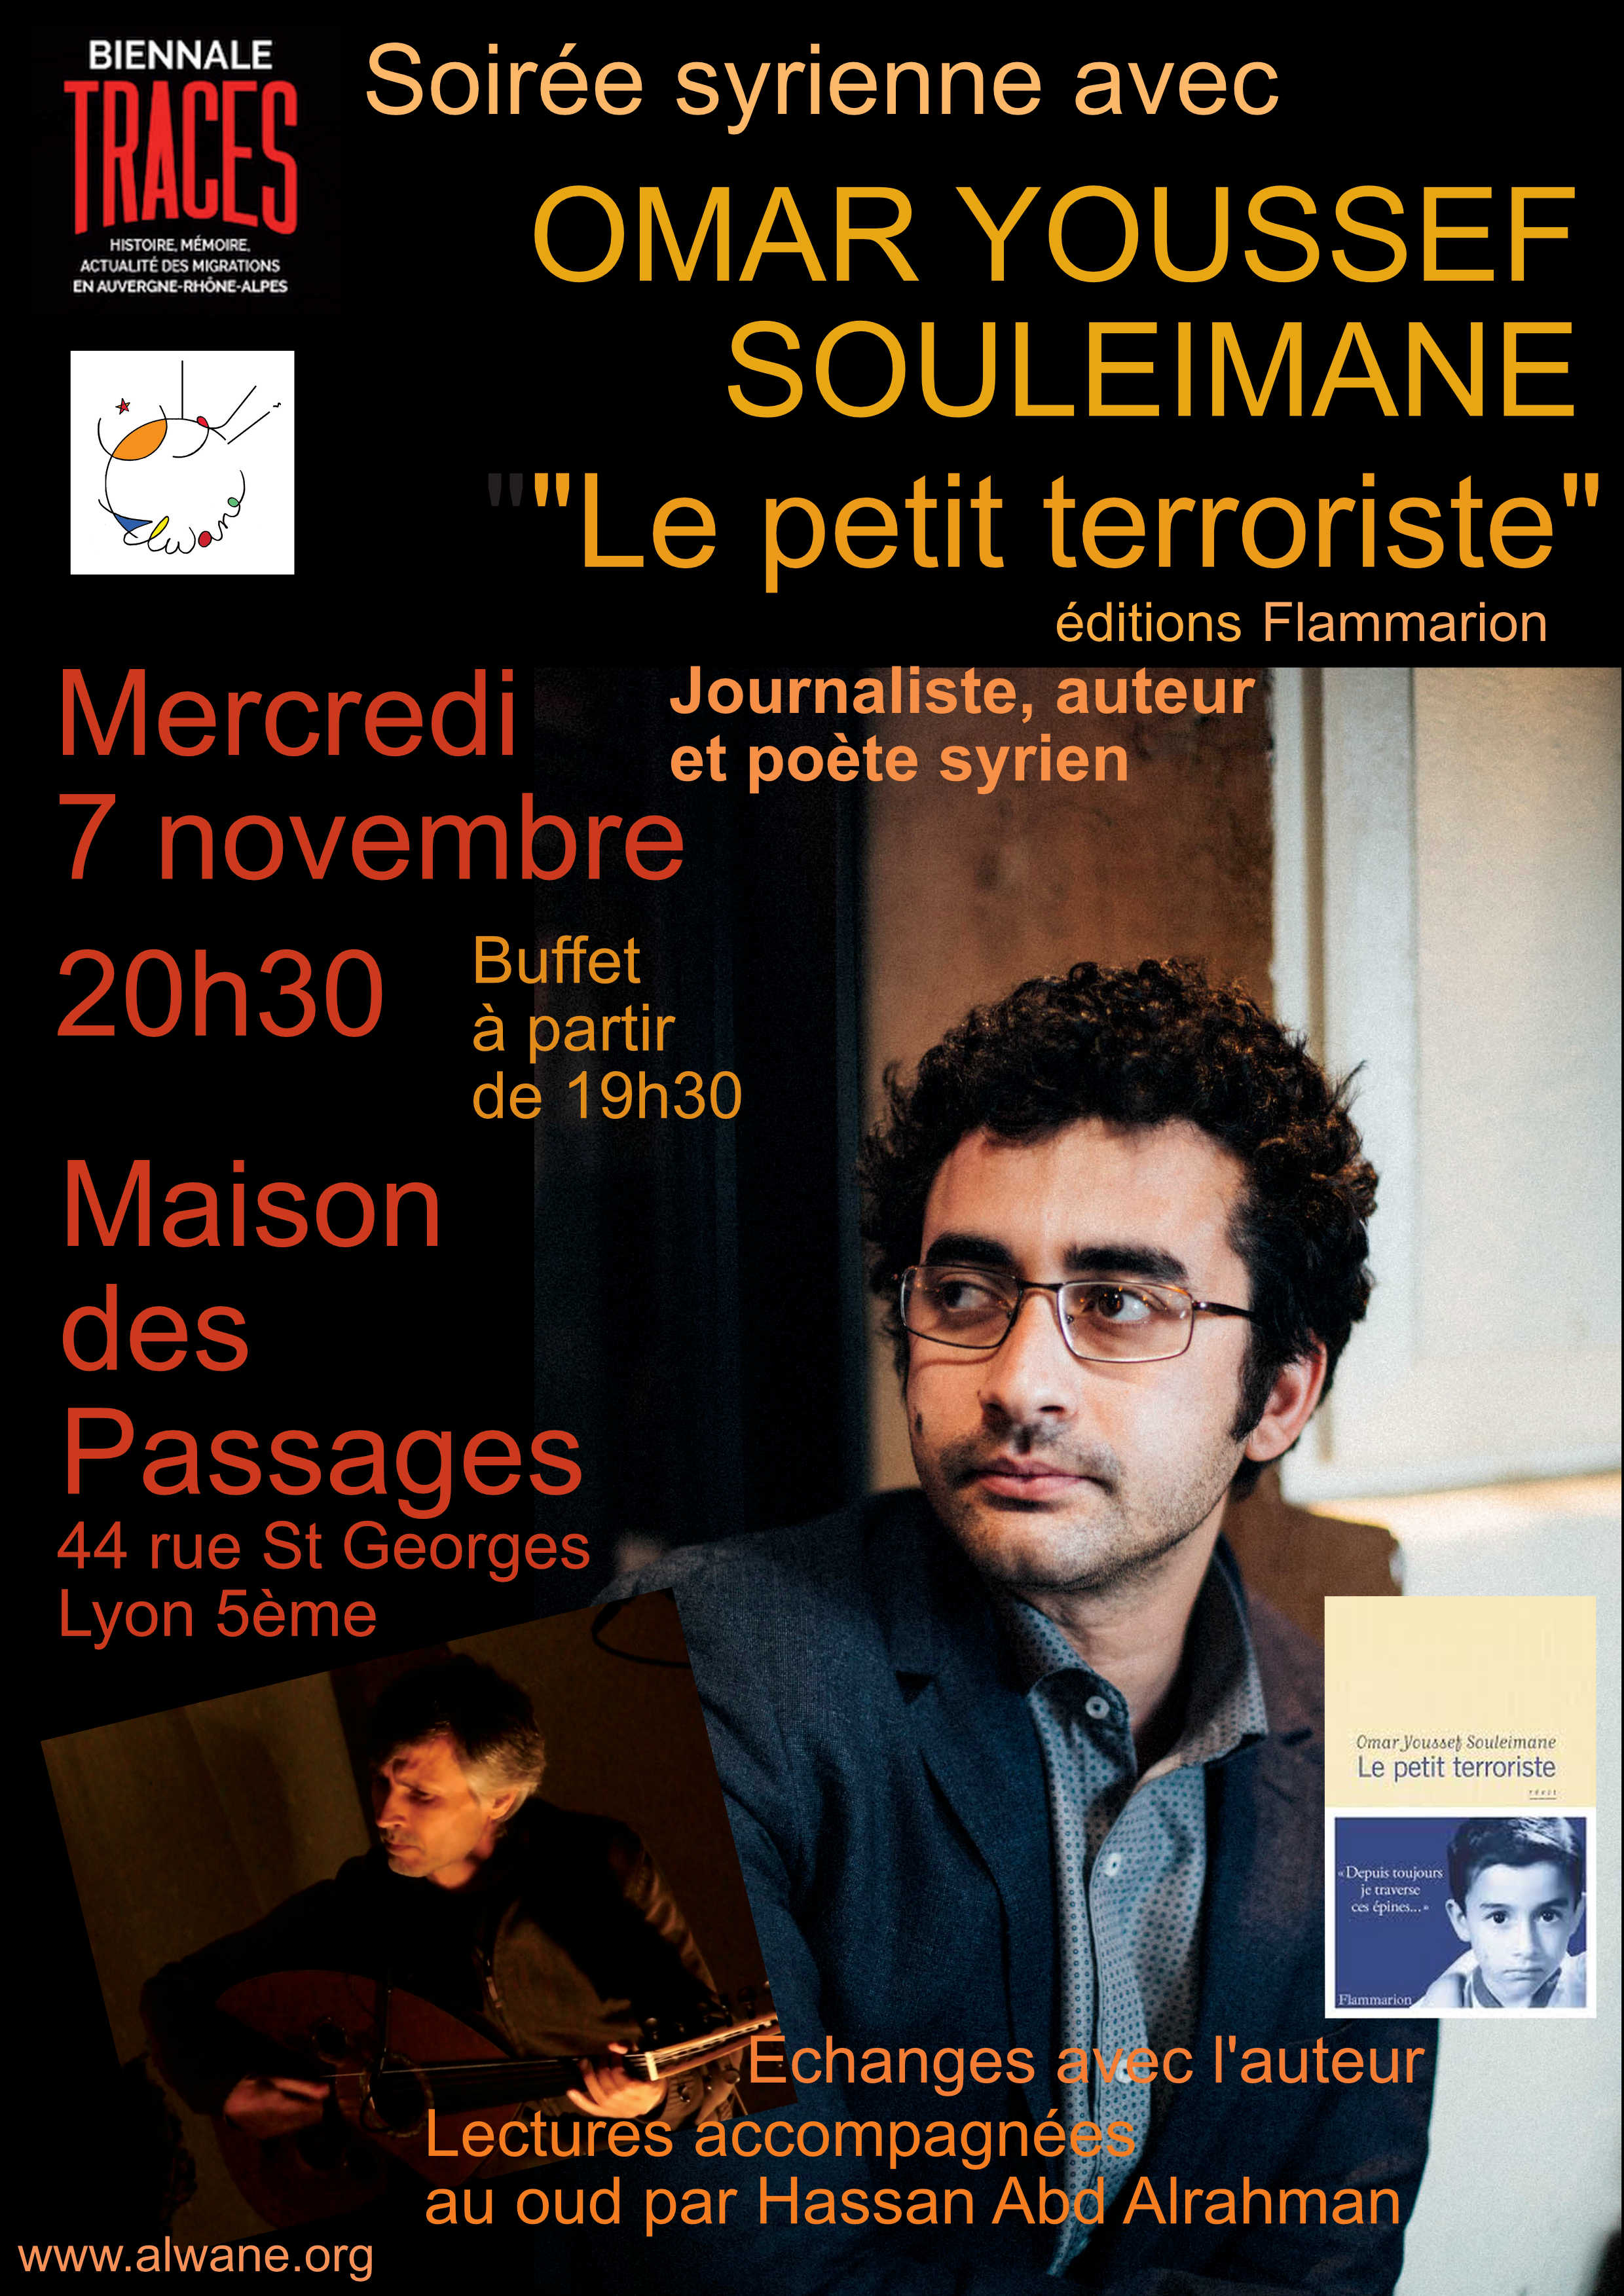 Une soirée avec Omar Youssef Souleimane, journaliste, auteur et poète syrien